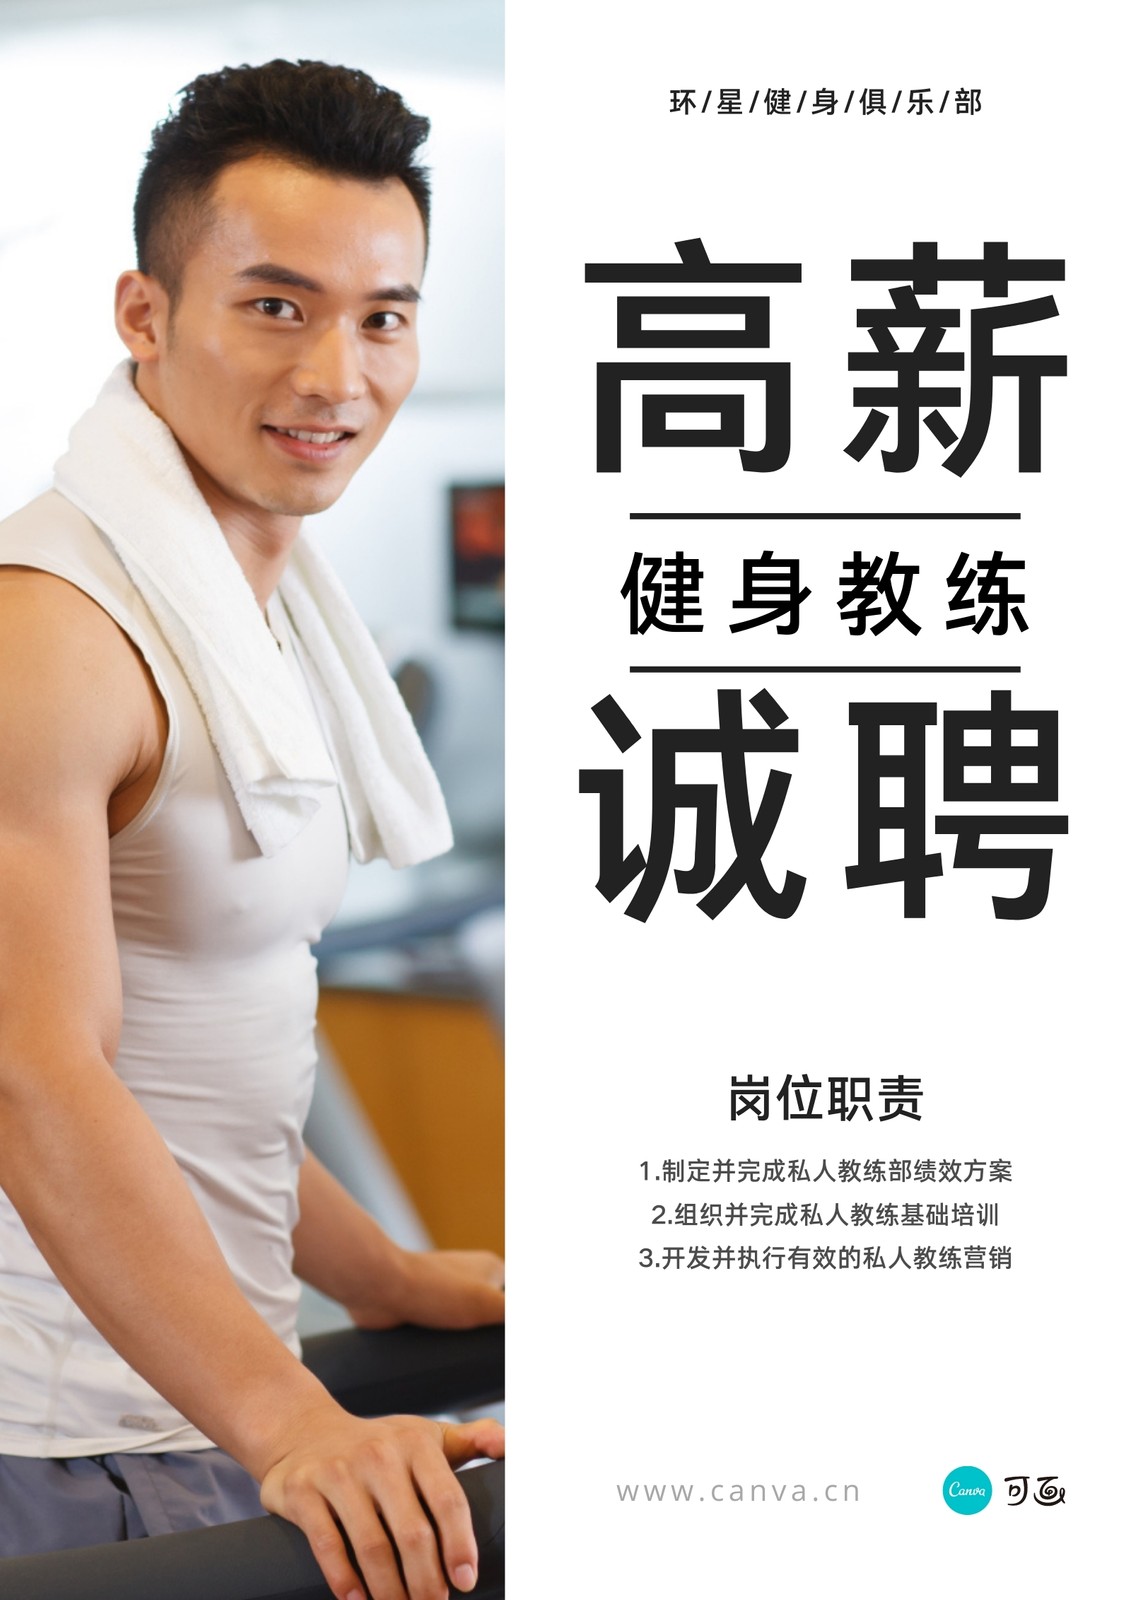 灰白色健身教练人物运动健身招聘中文海报